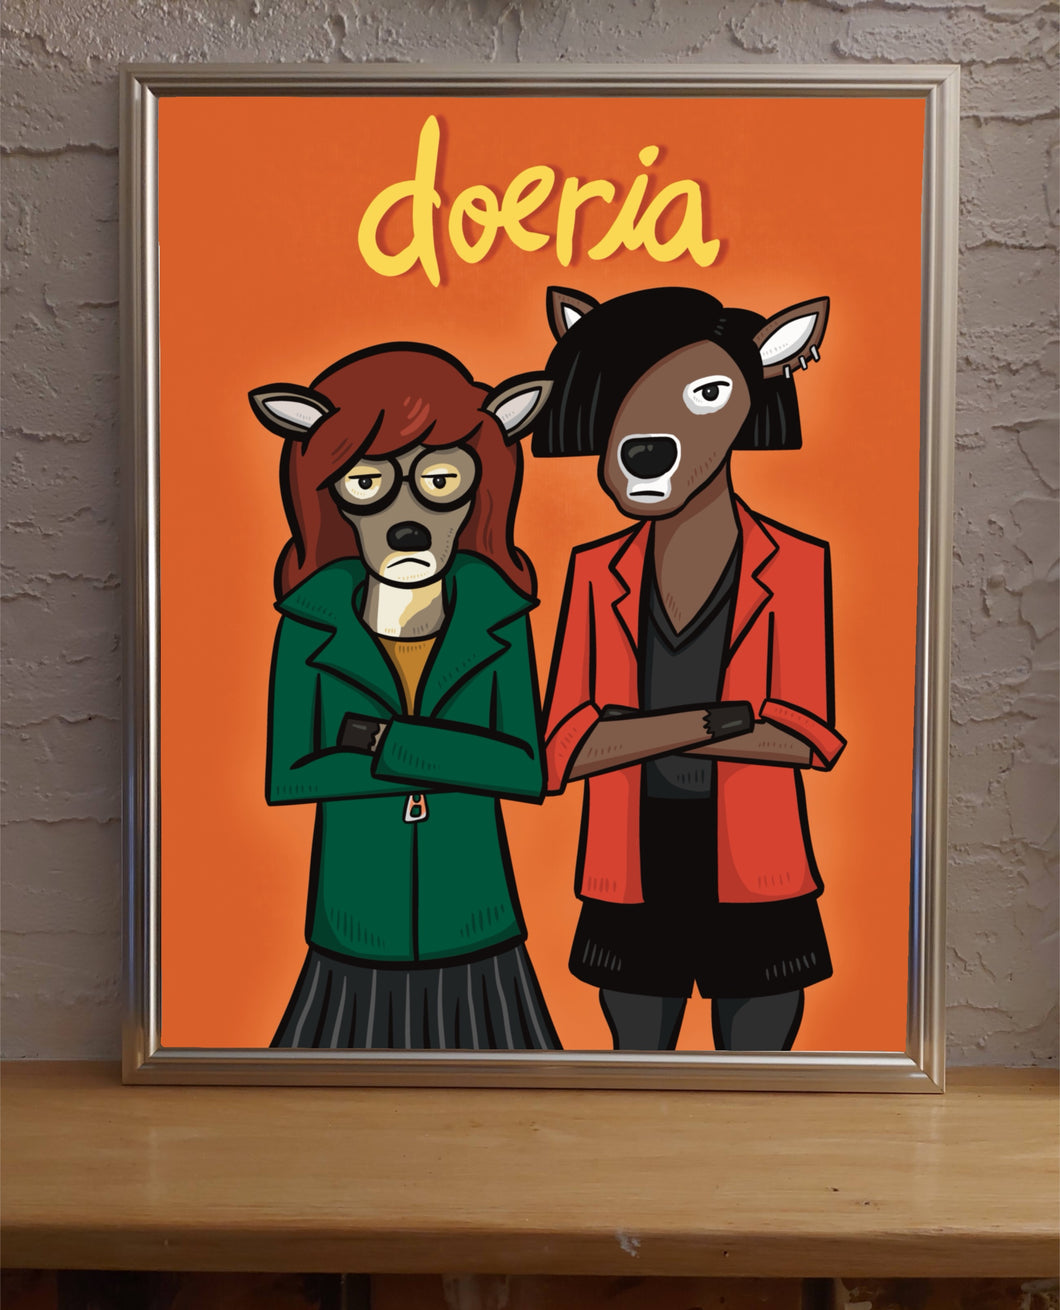 Doeria (Daria Parody)